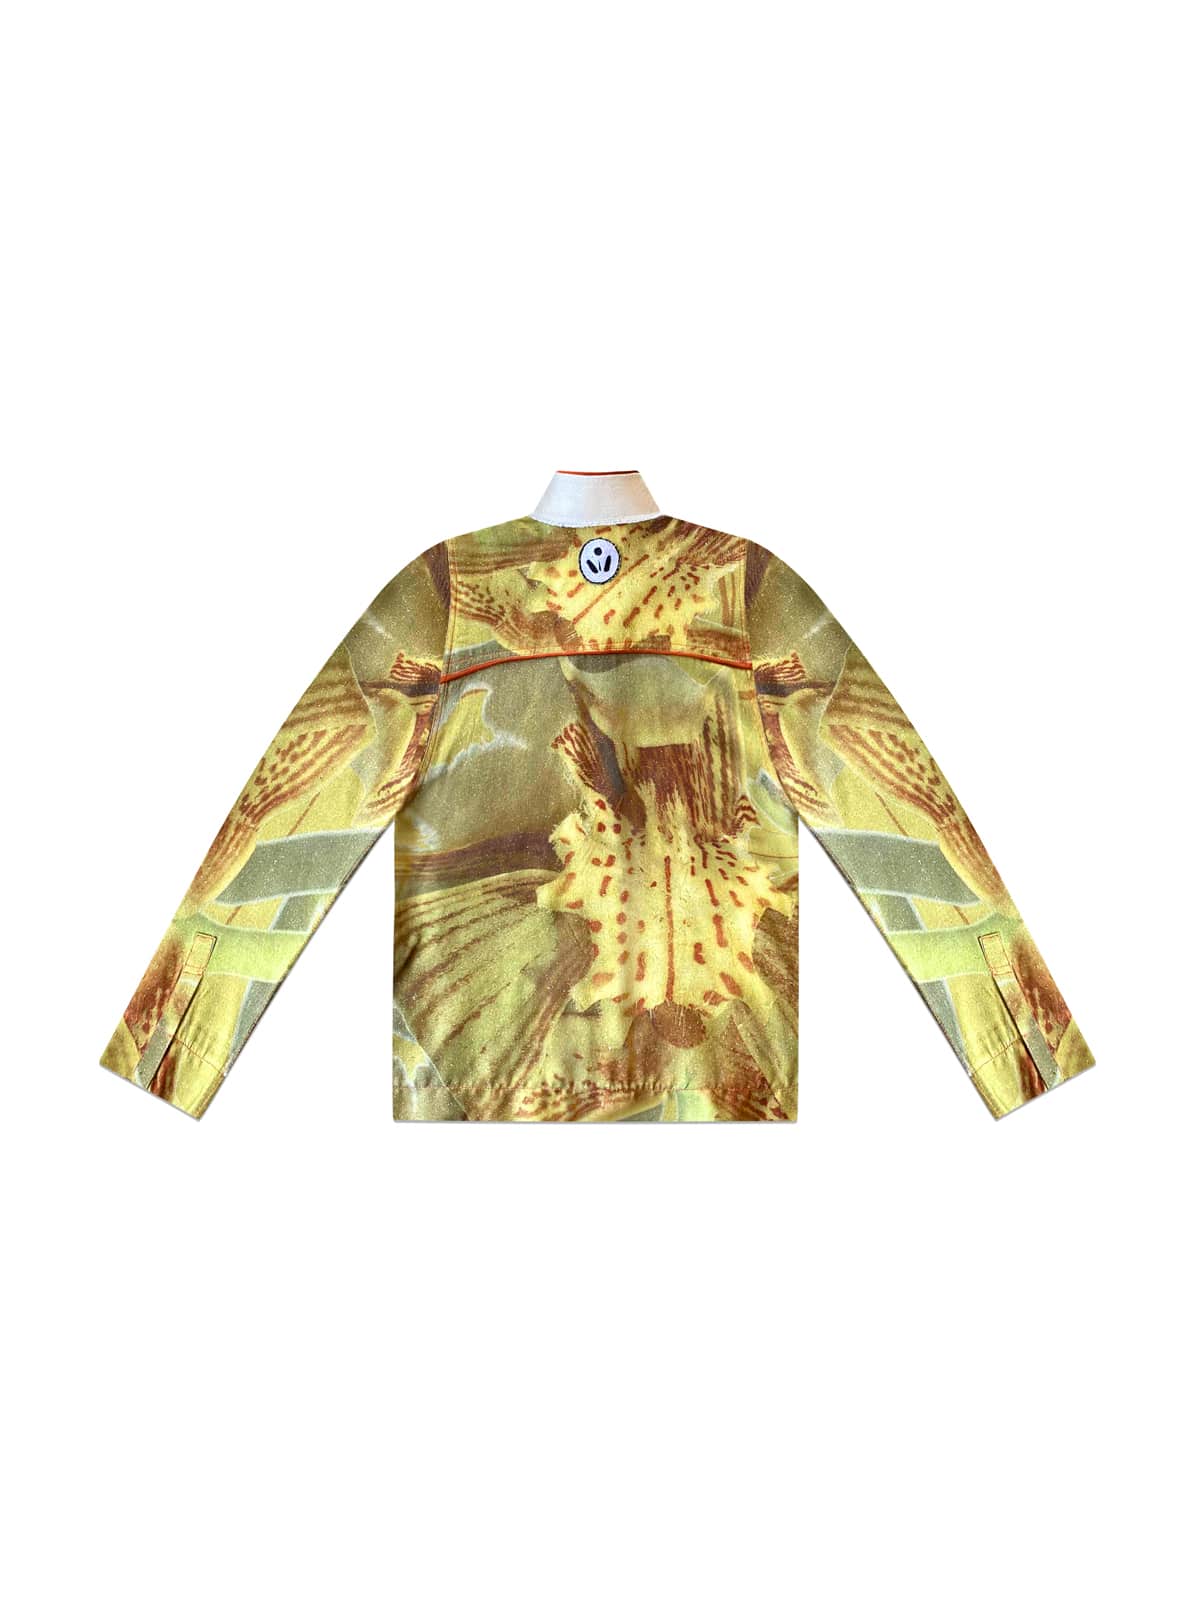 Acid Banana Orchid Pajama Shirt